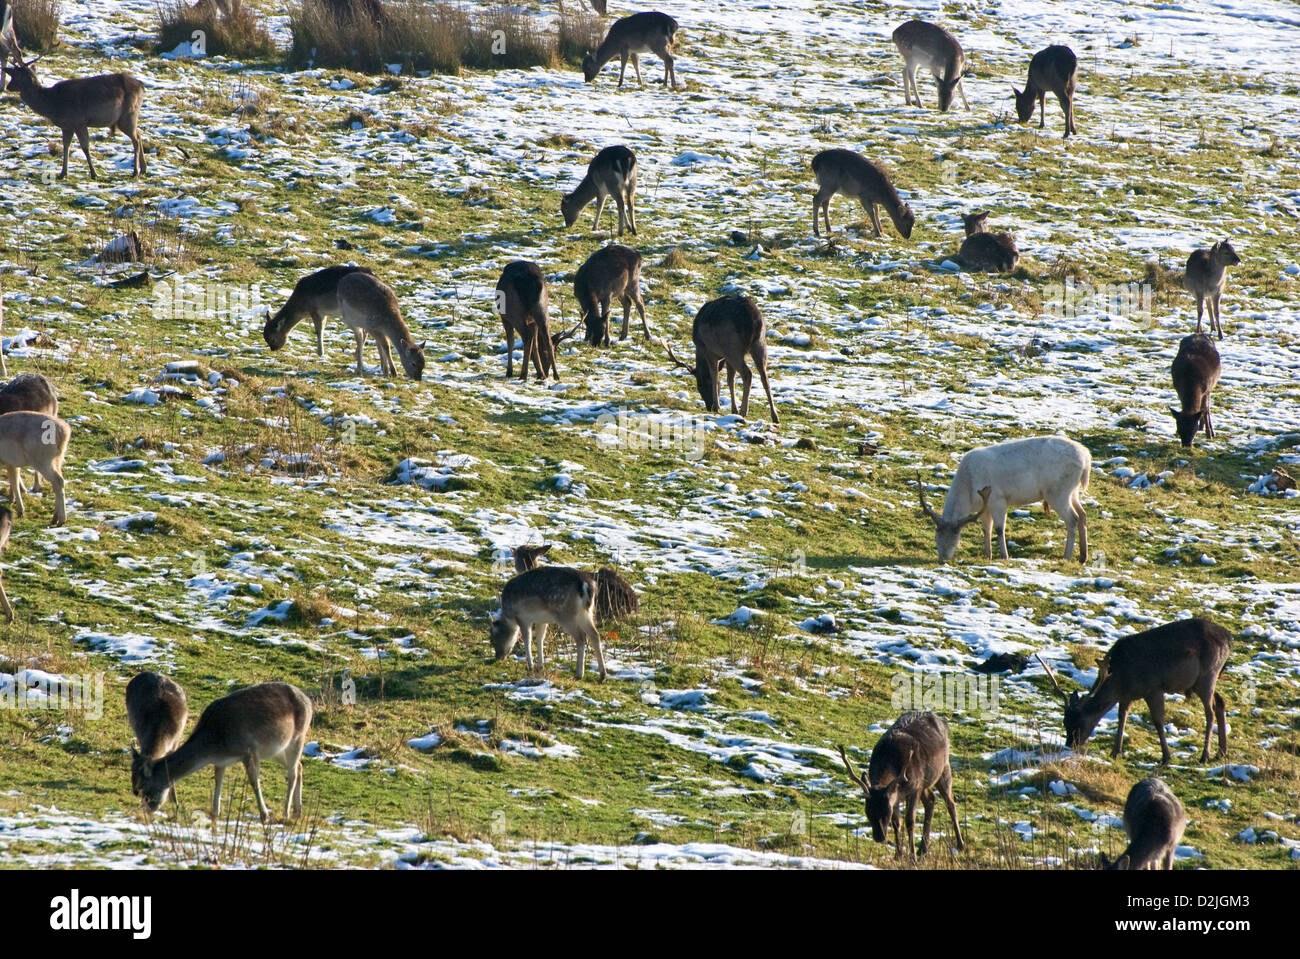 Fallow deer grazing Stock Photo